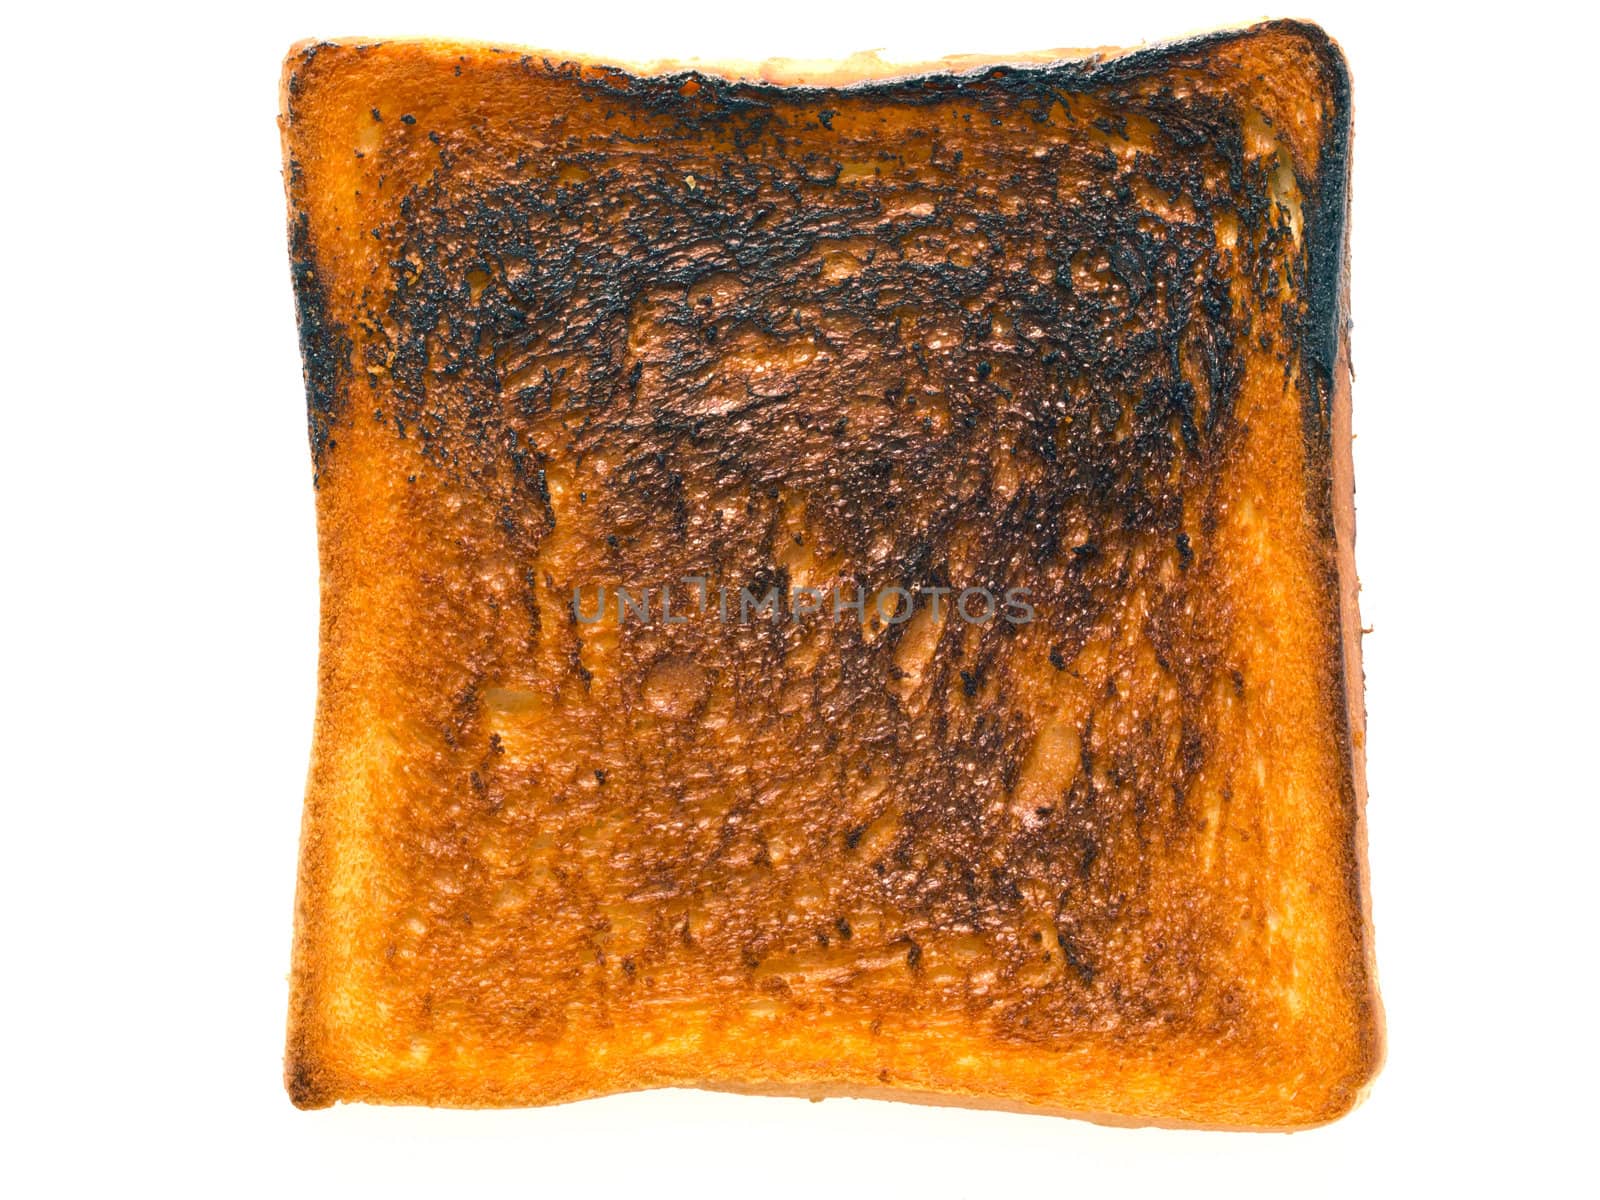 burnt toast by zkruger